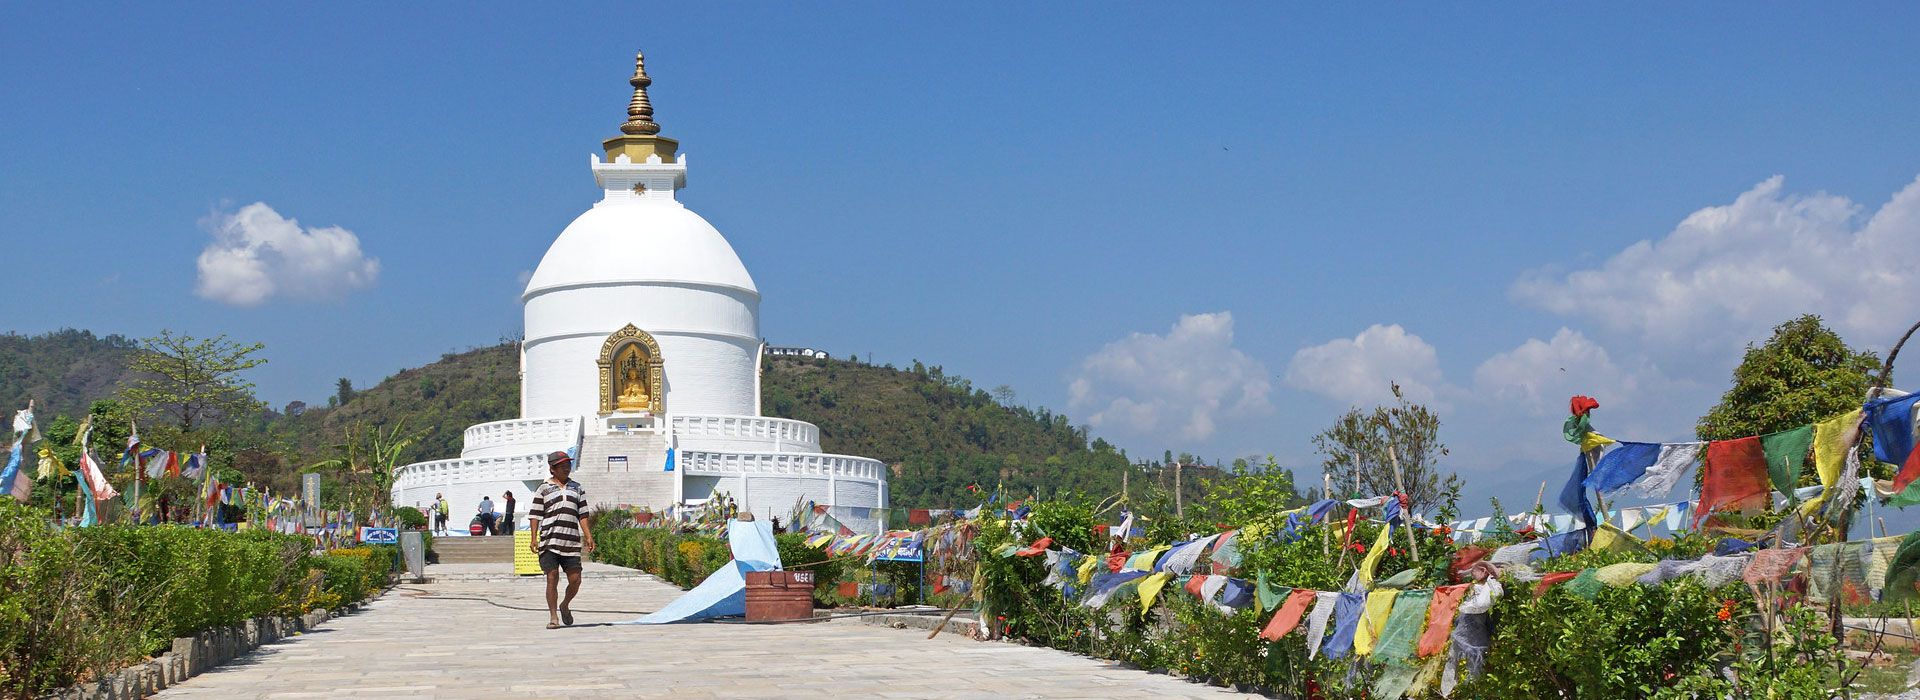 World Peace Pagoda at Pokhara